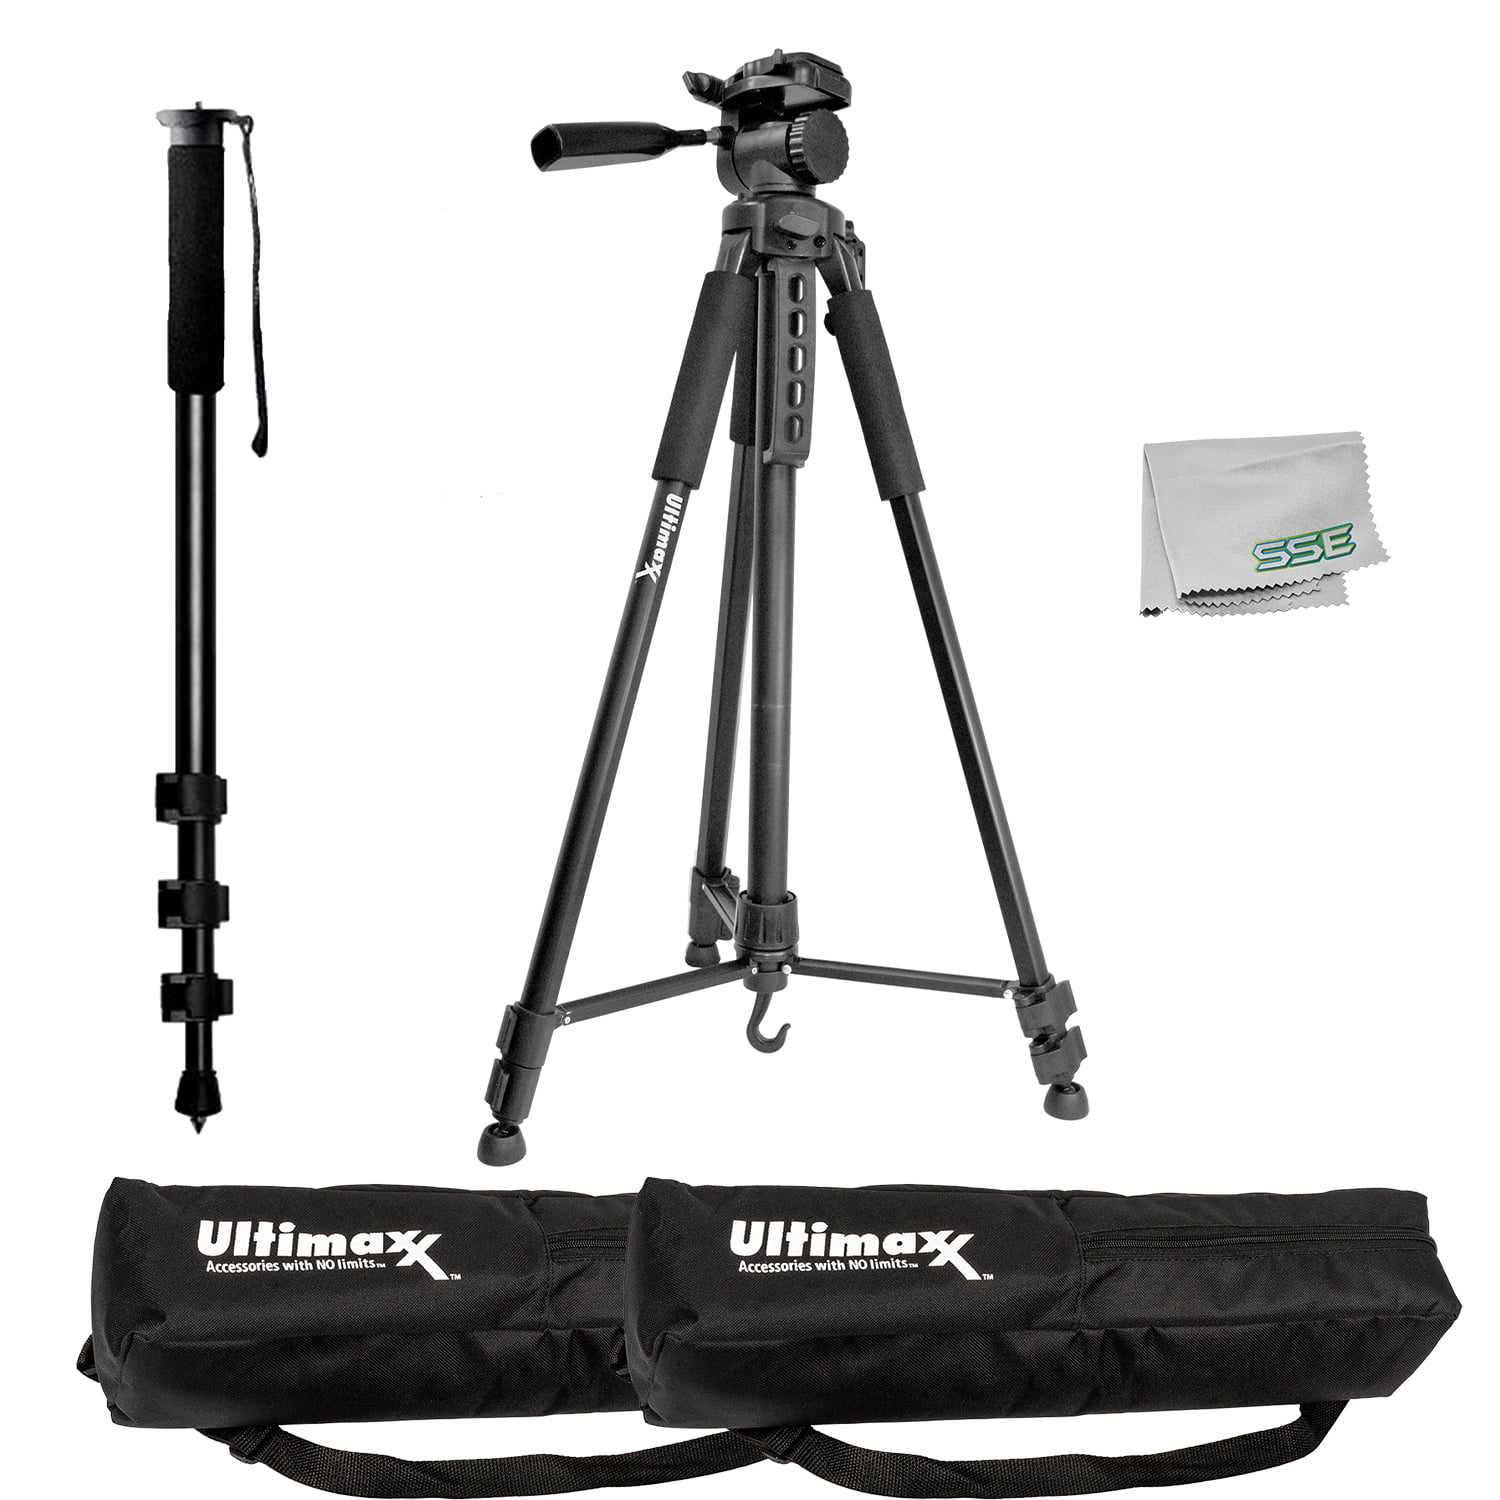 Adjustable Height 16.5-21.5cm Camera & Photo Pocket 5-Mode Adjustable Desktop Tripod Mount with 1/4 inch Screw for DSLR & Digital Cameras